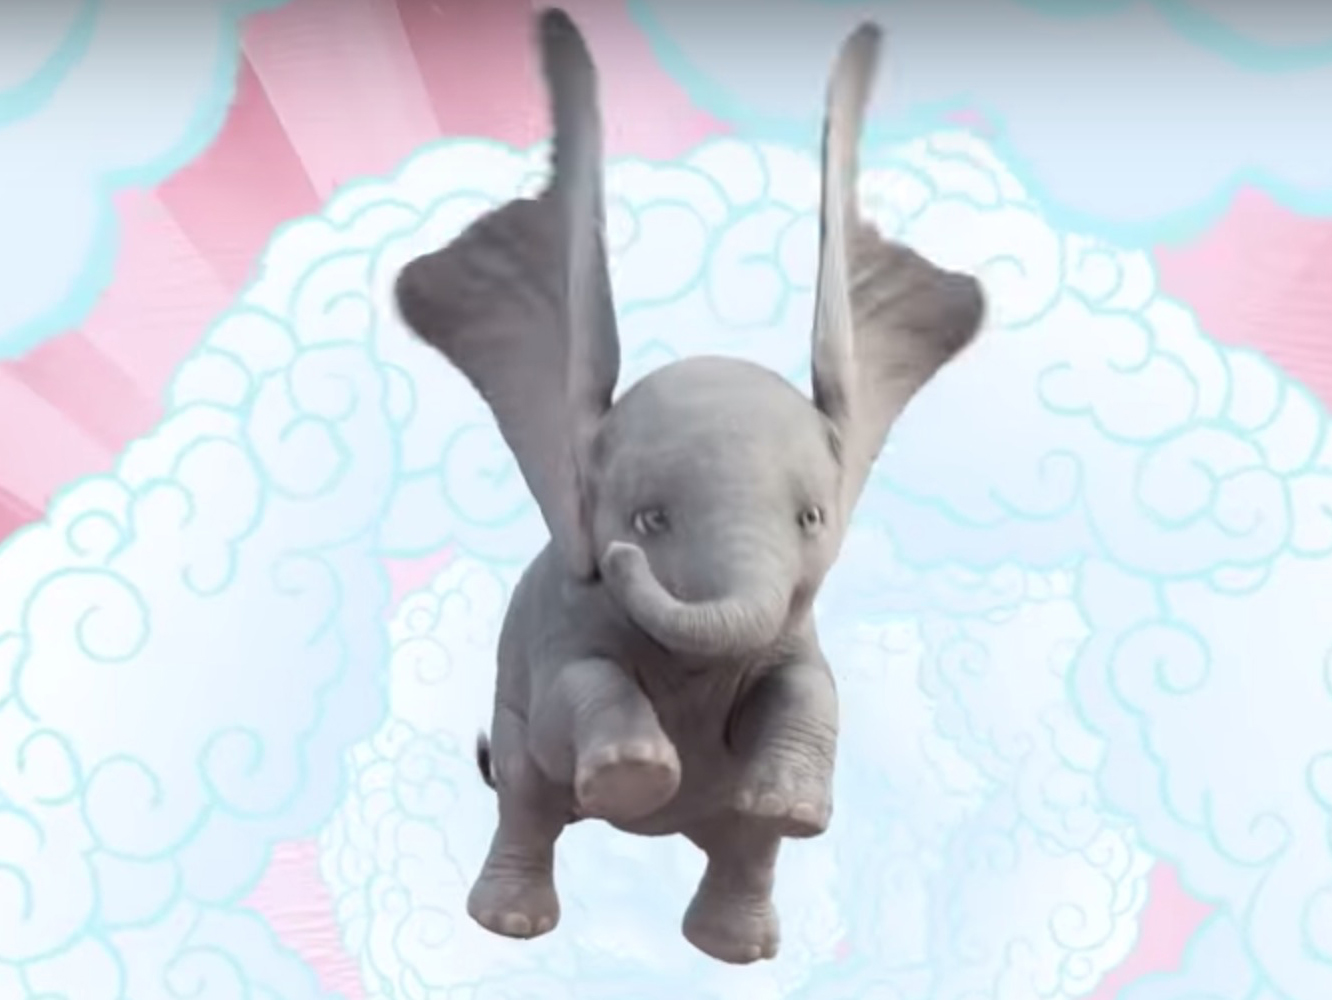  El ‘Dumbo’ de Disney es indie: así suenan los temas de Najwa Nimri y Arcade Fire